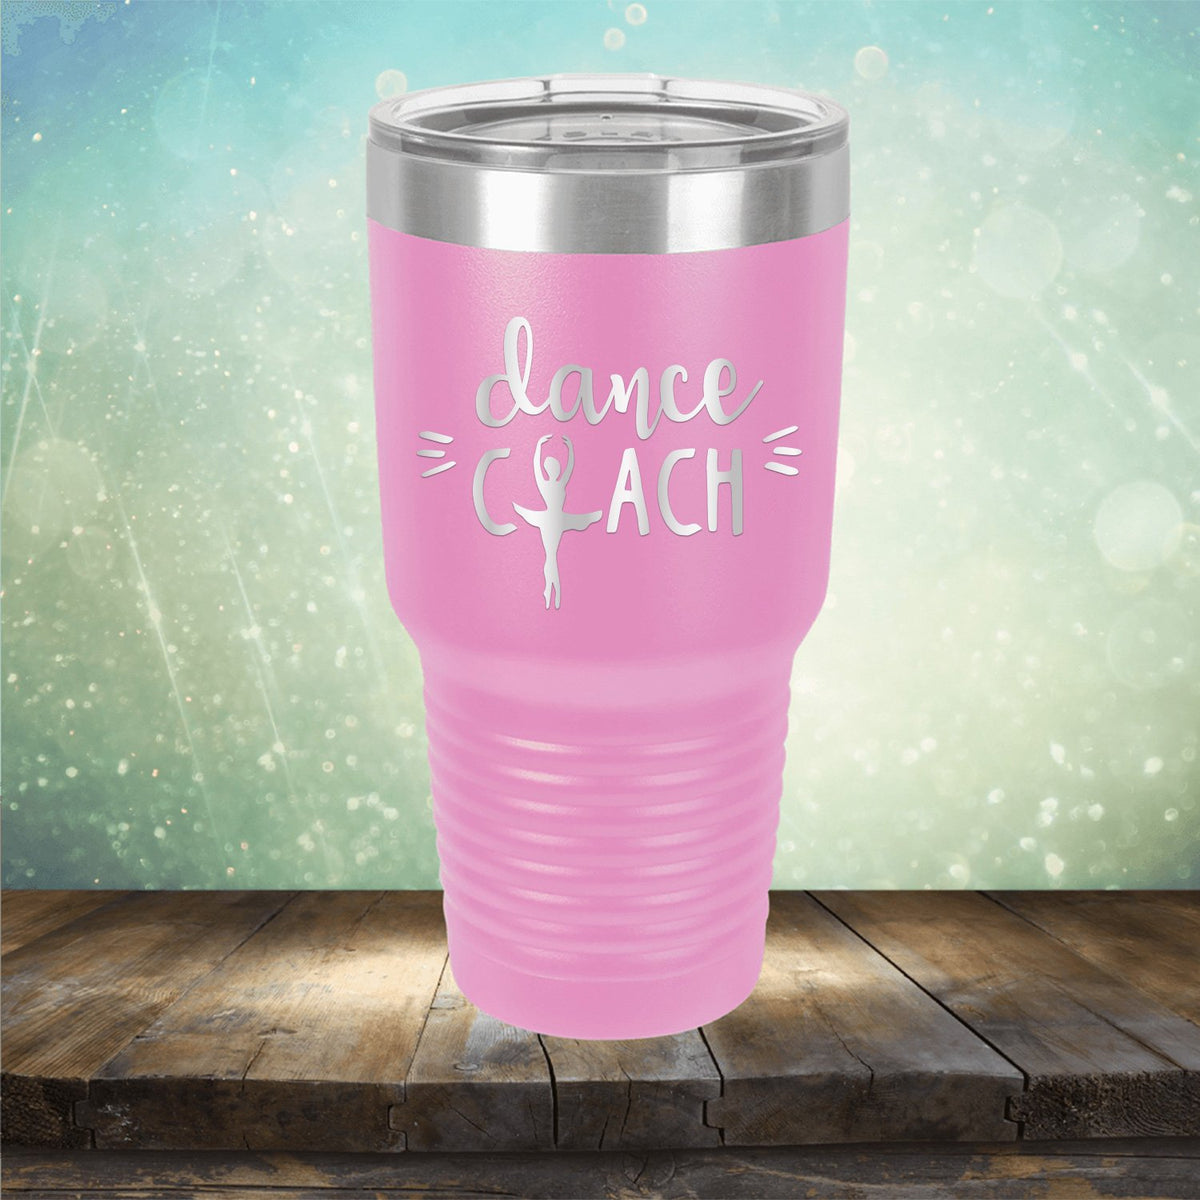 Dance Coach - Laser Etched Tumbler Mug